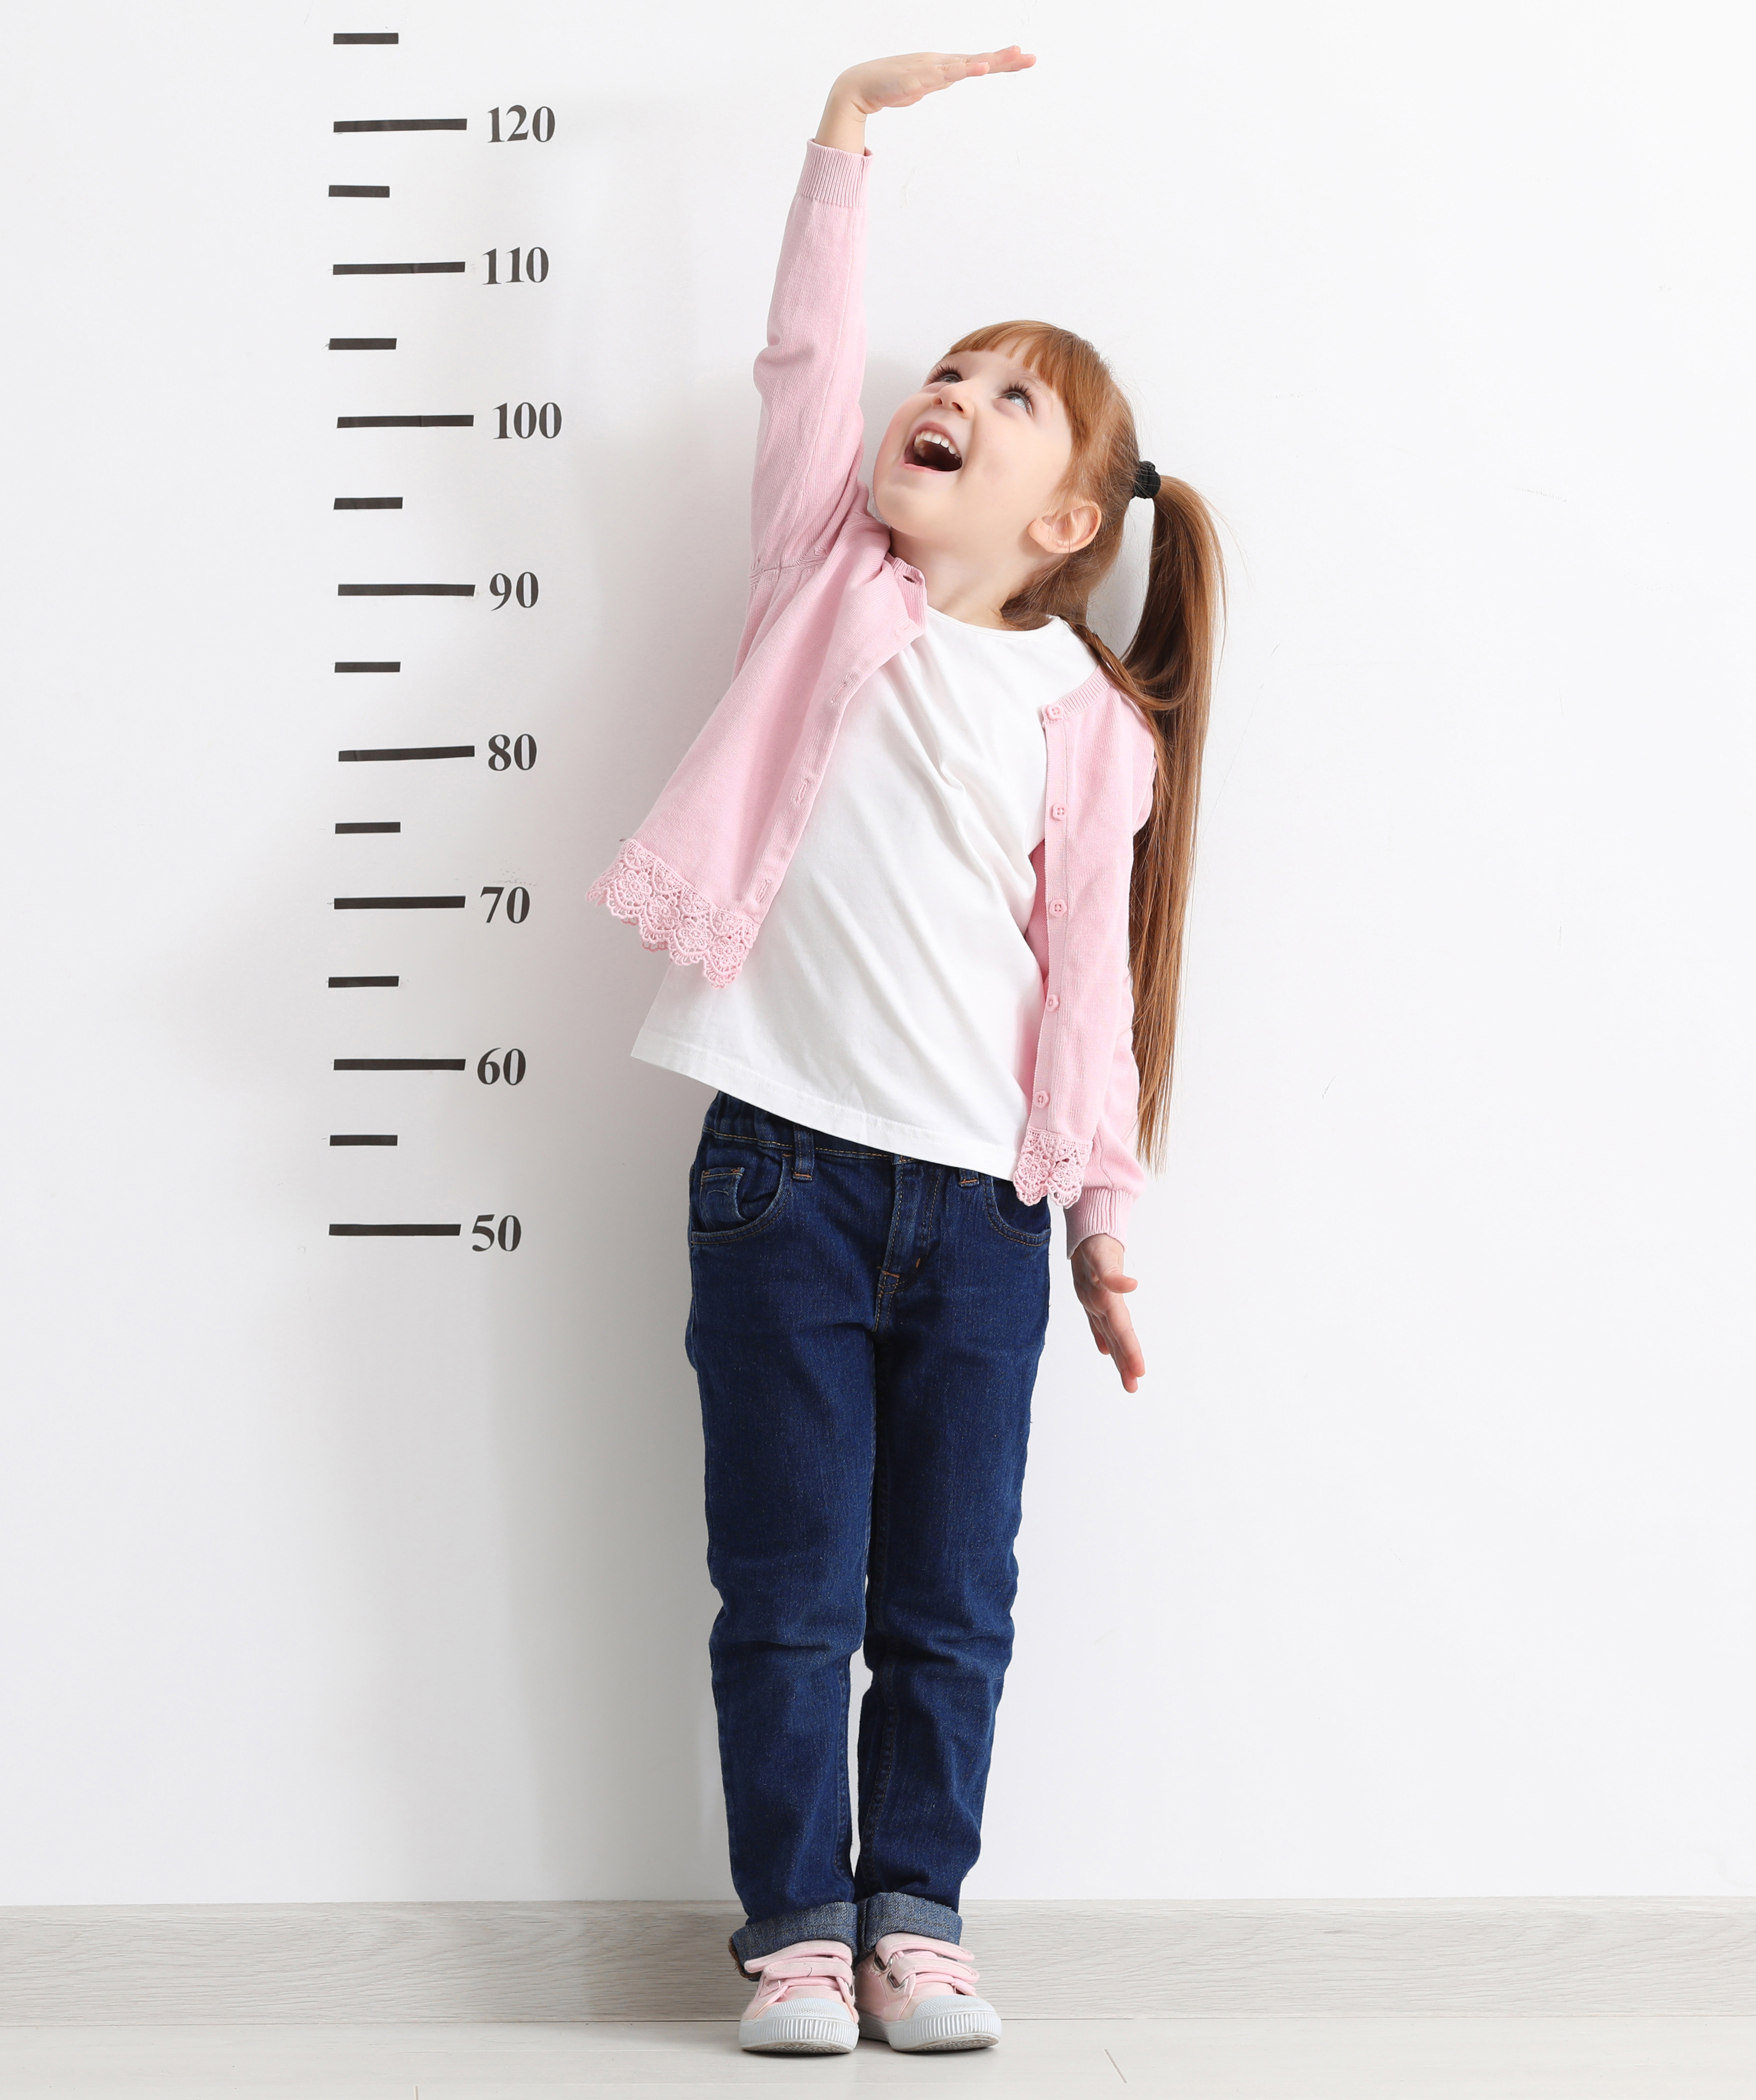 Child height. Ребенок меряет рост. Ребенок измеряет рост. Ростомер. Измерение роста школьников.